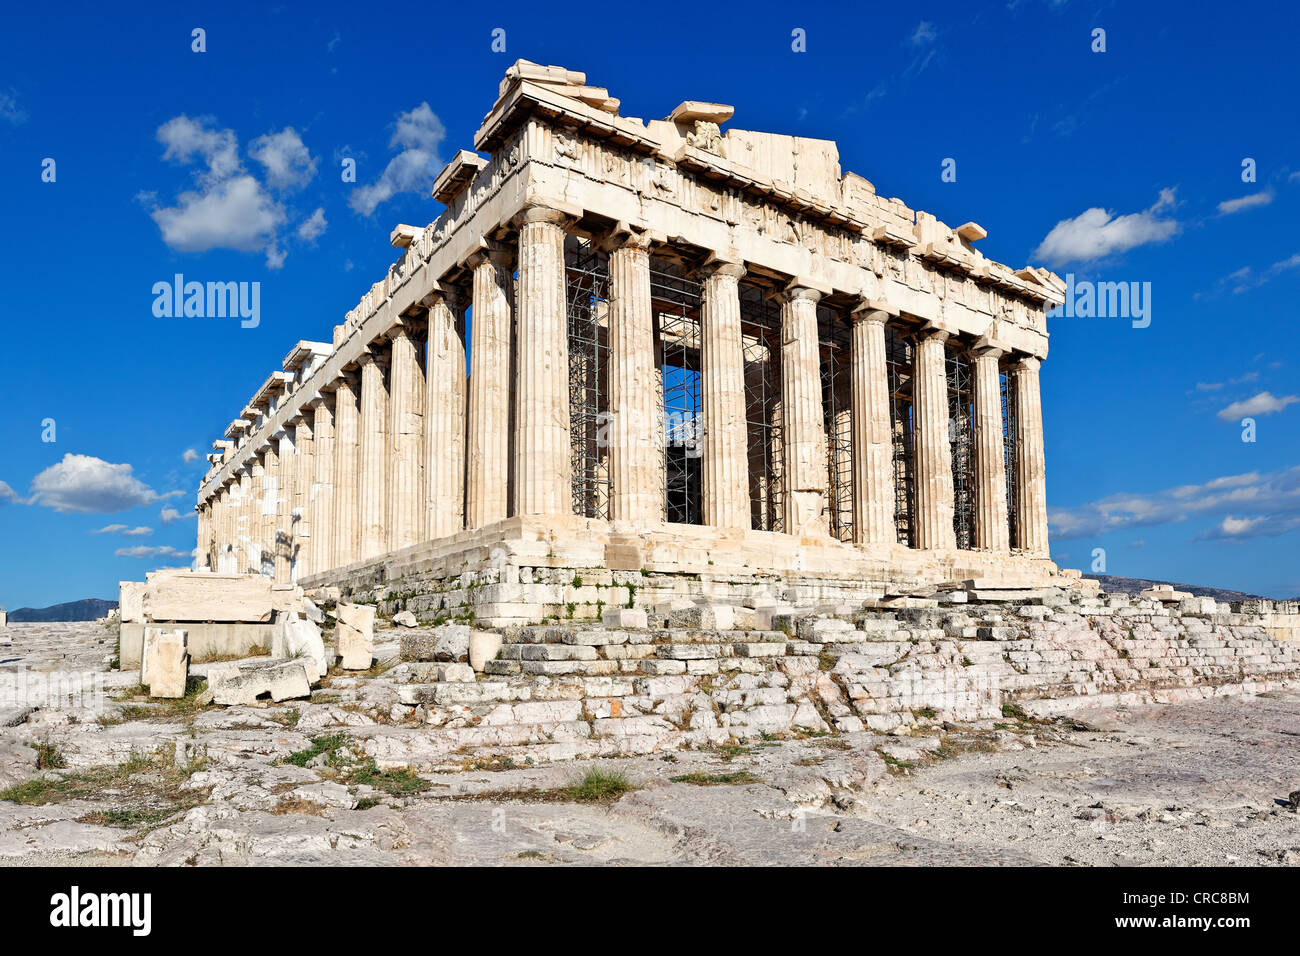 The Parthenon (447 B.C.) on the Athenian Acropolis, Greece Stock Photo